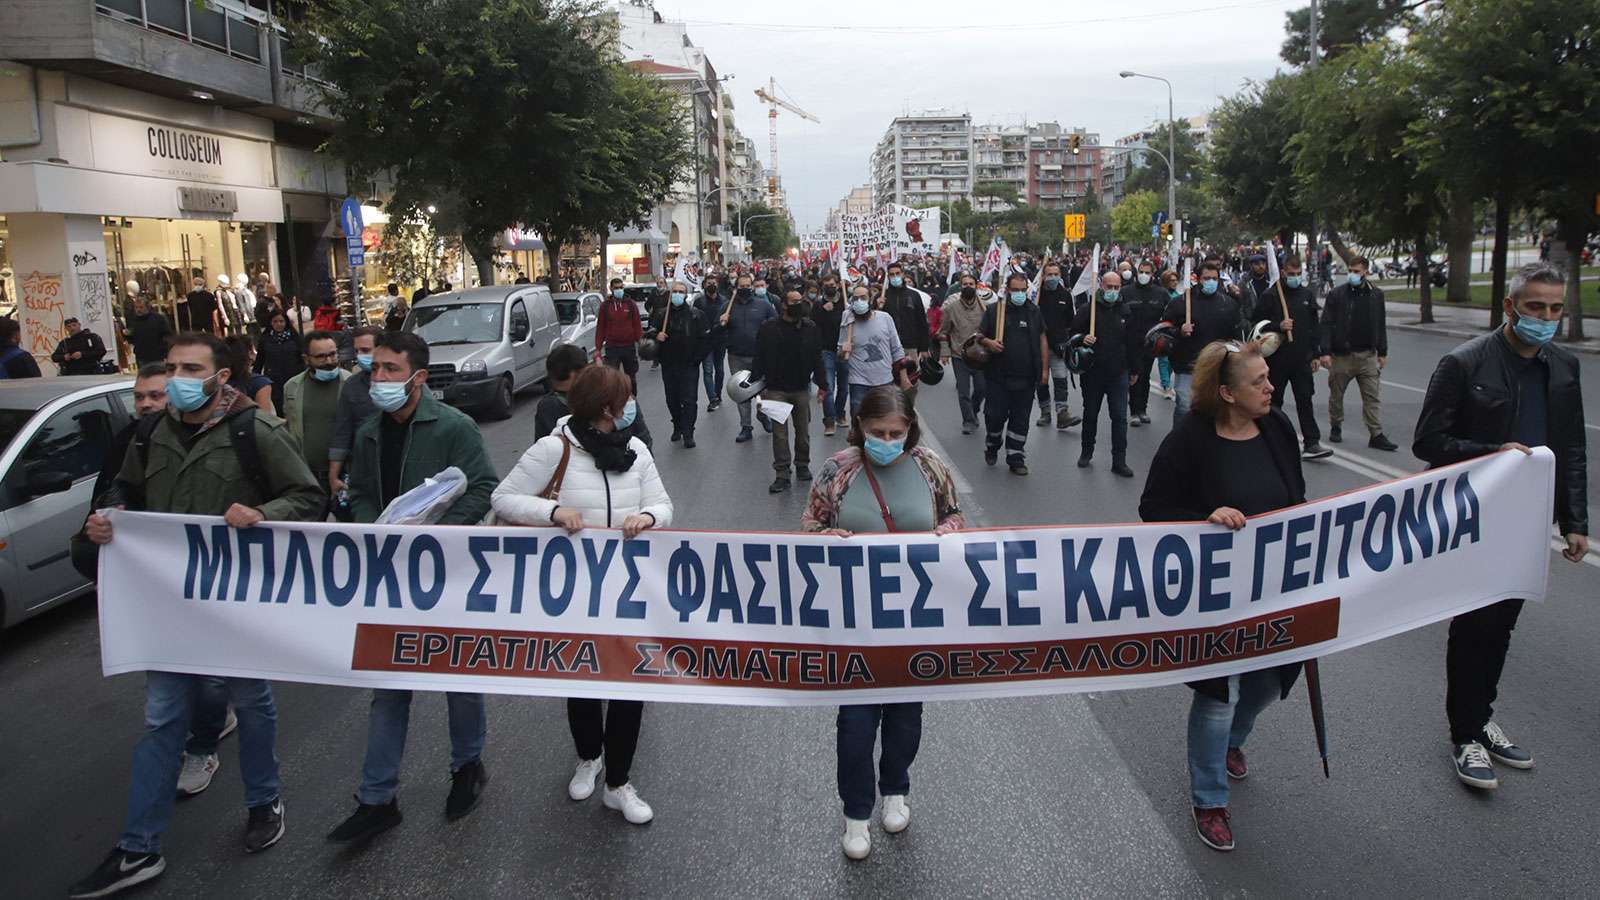 Θεσσαλονίκη «Δεν ξεχνάμε! Το φασισμό και το σύστημα που τον γεννά πολεμάμε!»